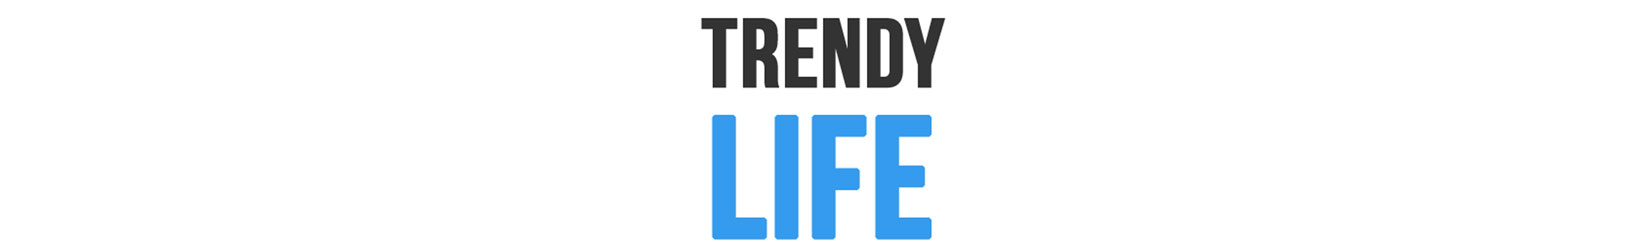 trendy life